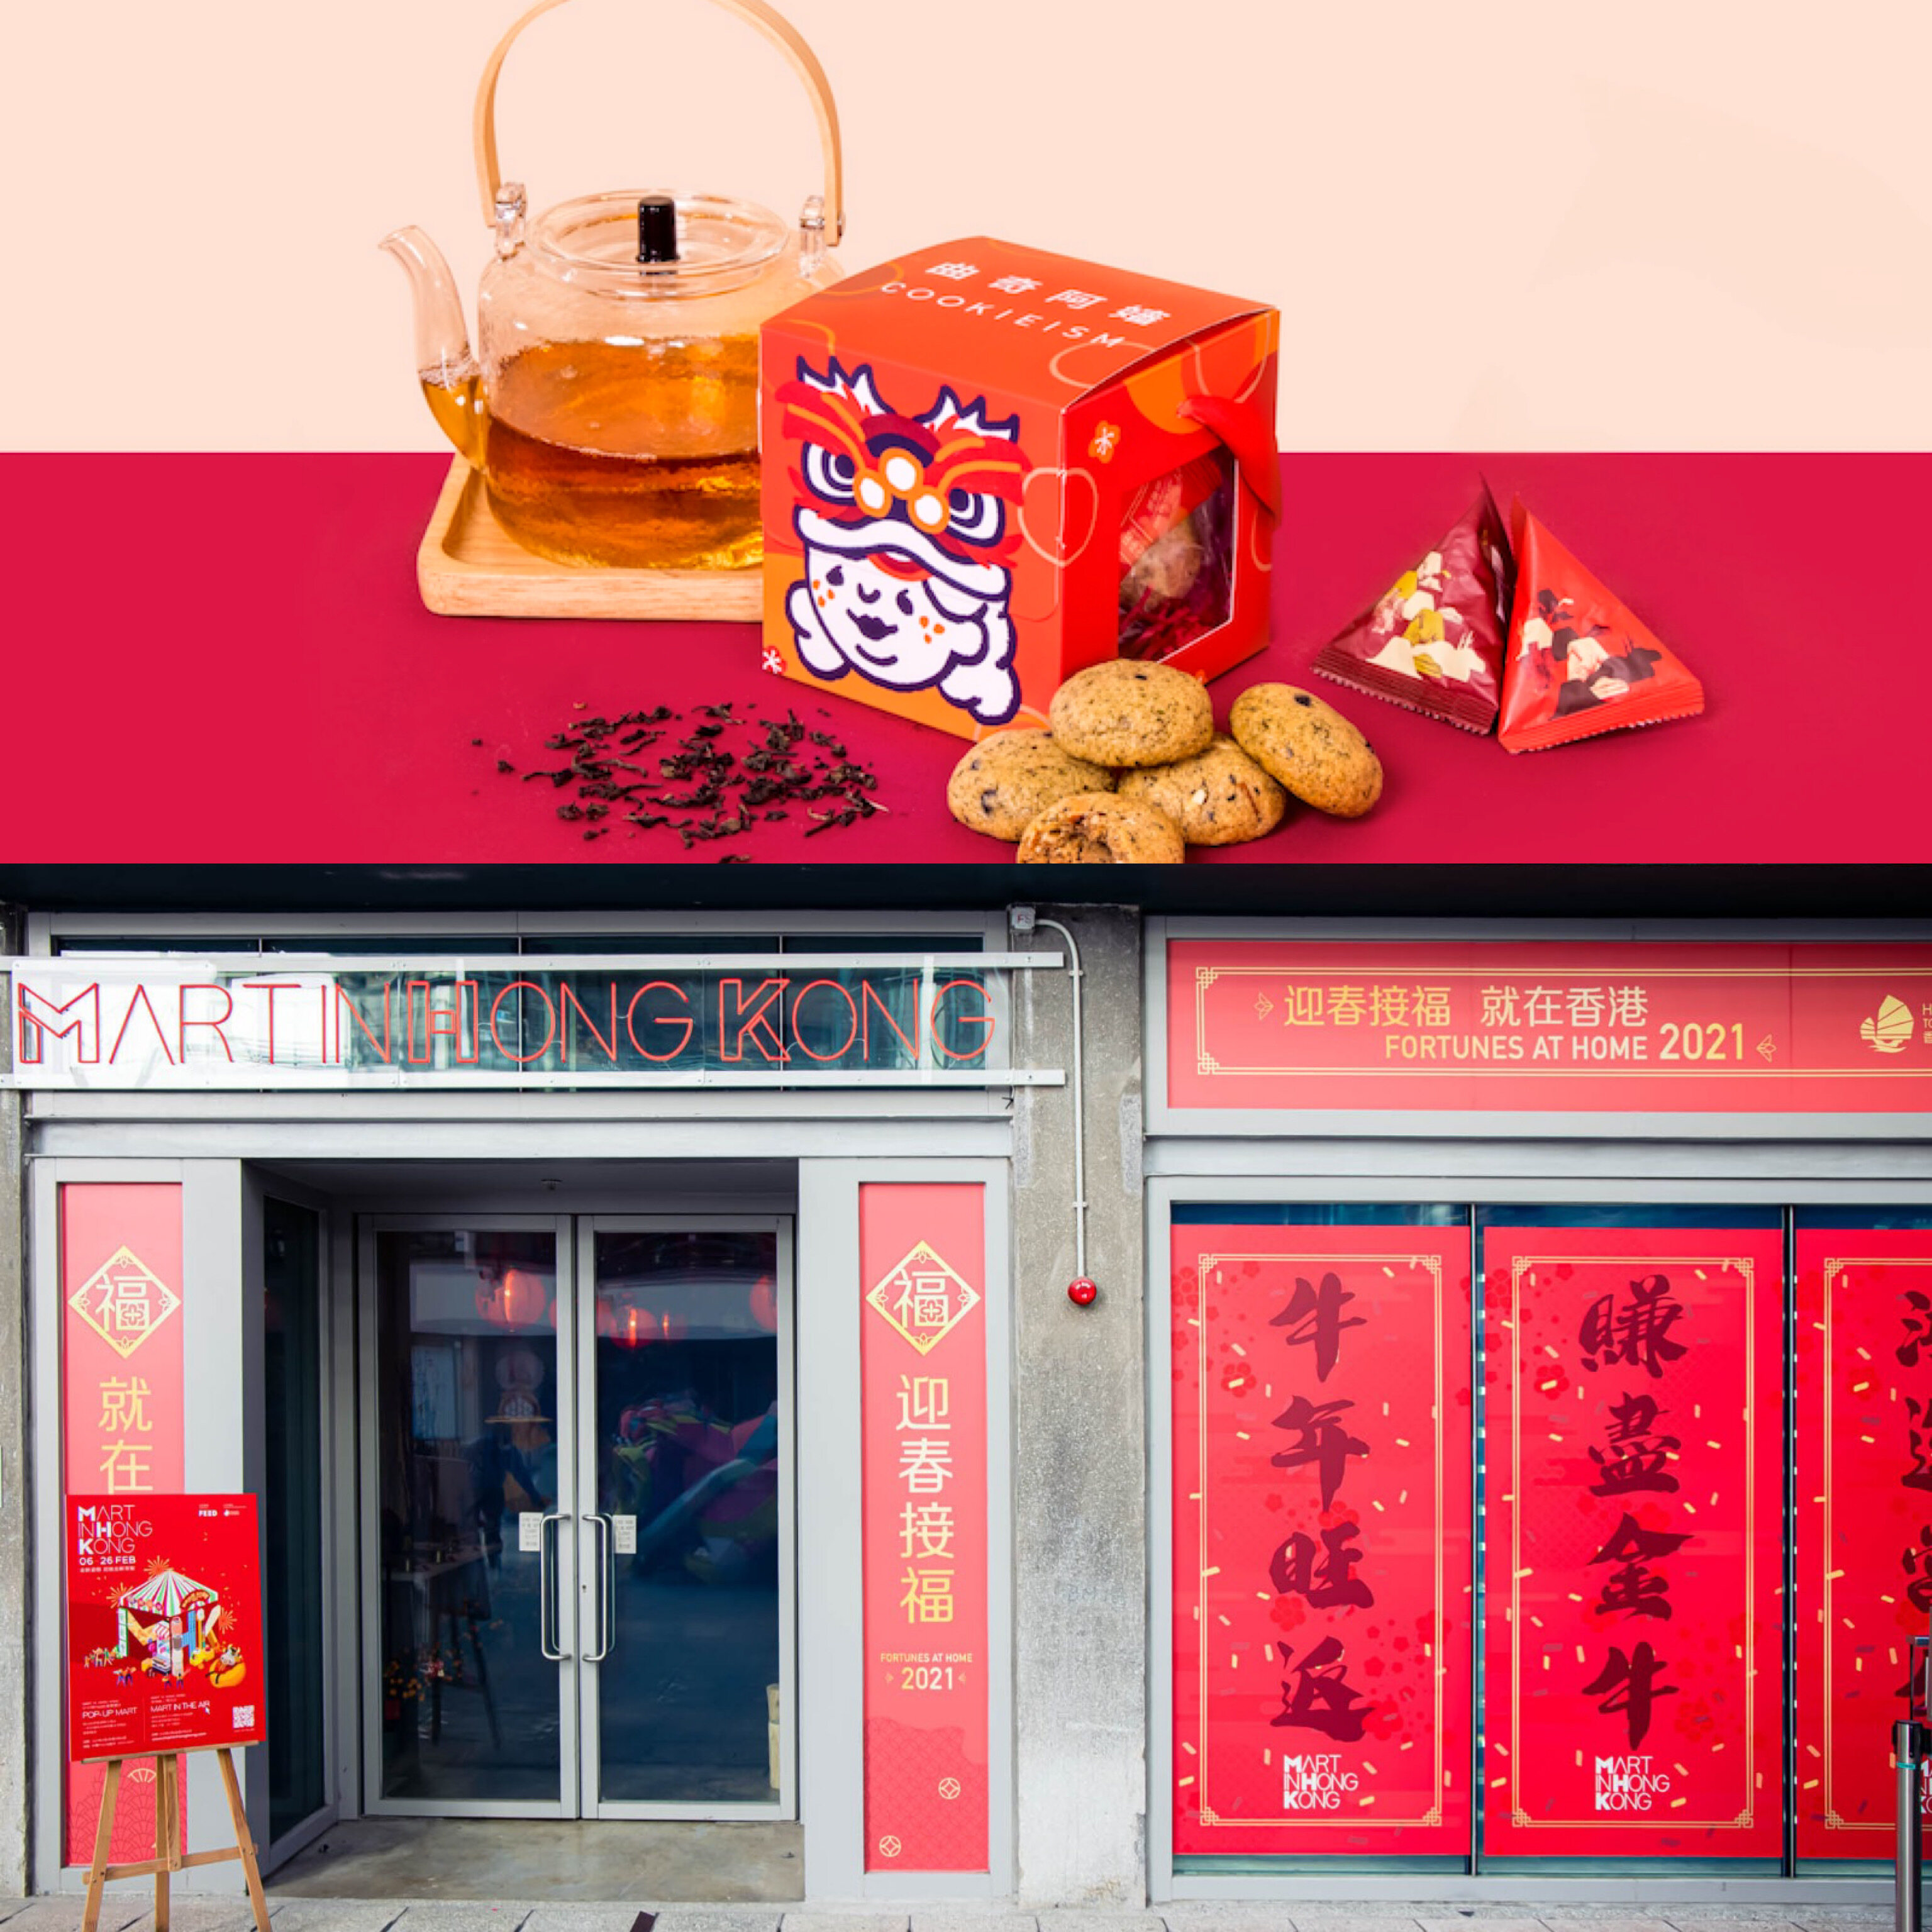 2021年新年好去處+利是封海港城超靚利是封、時代廣場emograms、Toy Story、Plastic Thing、罐頭豬